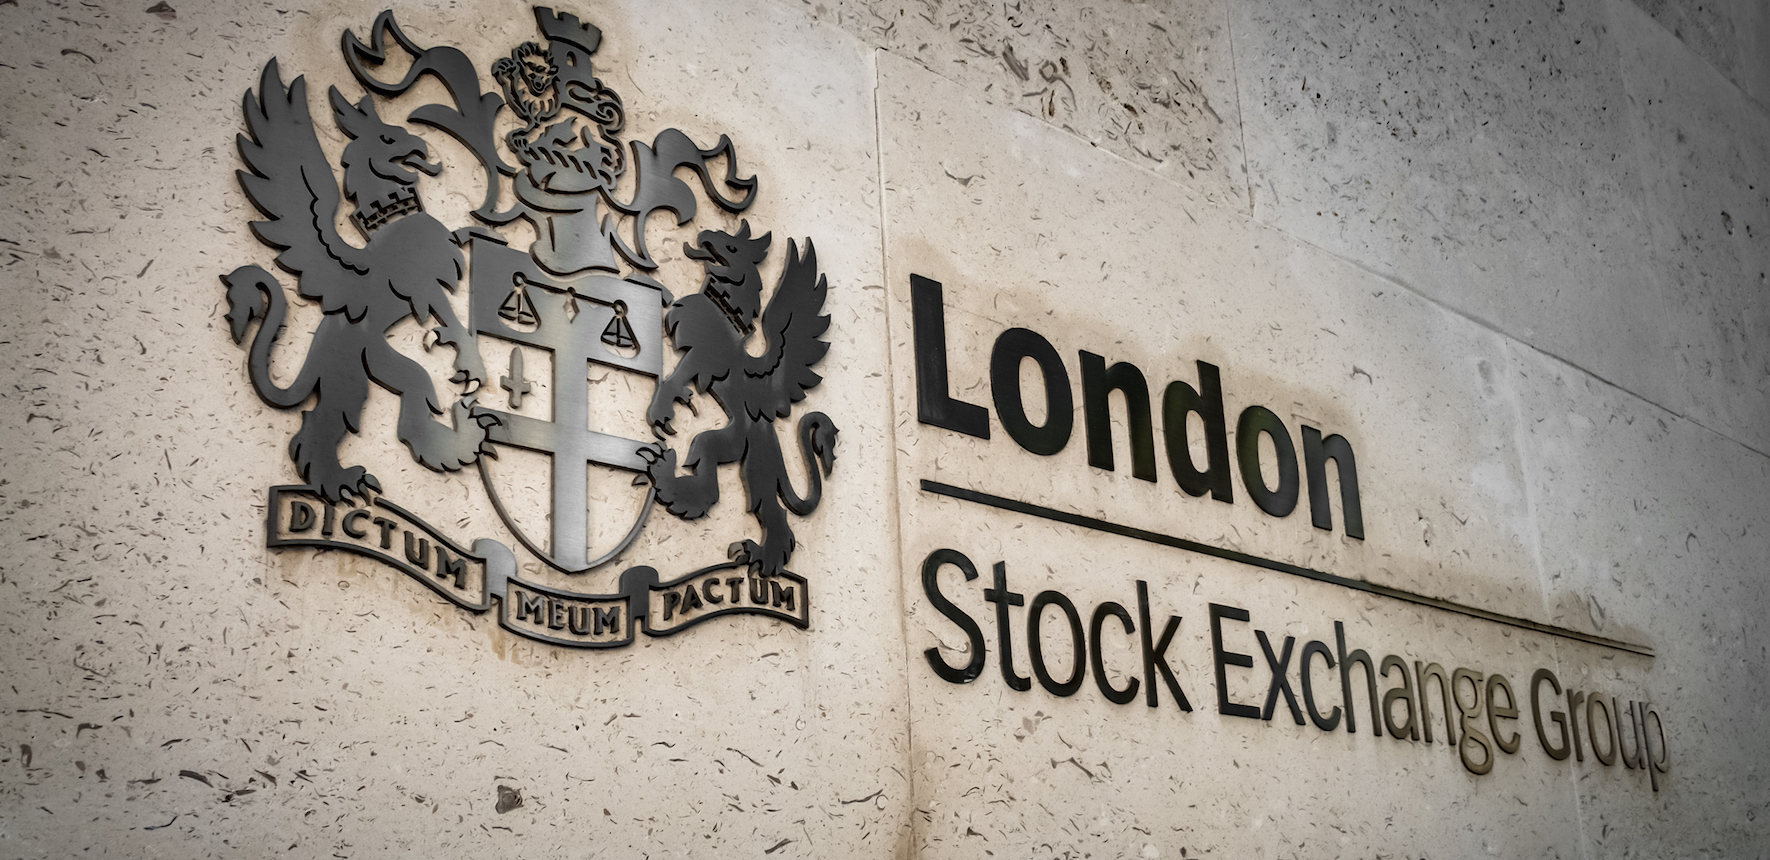 london stock exchange visit